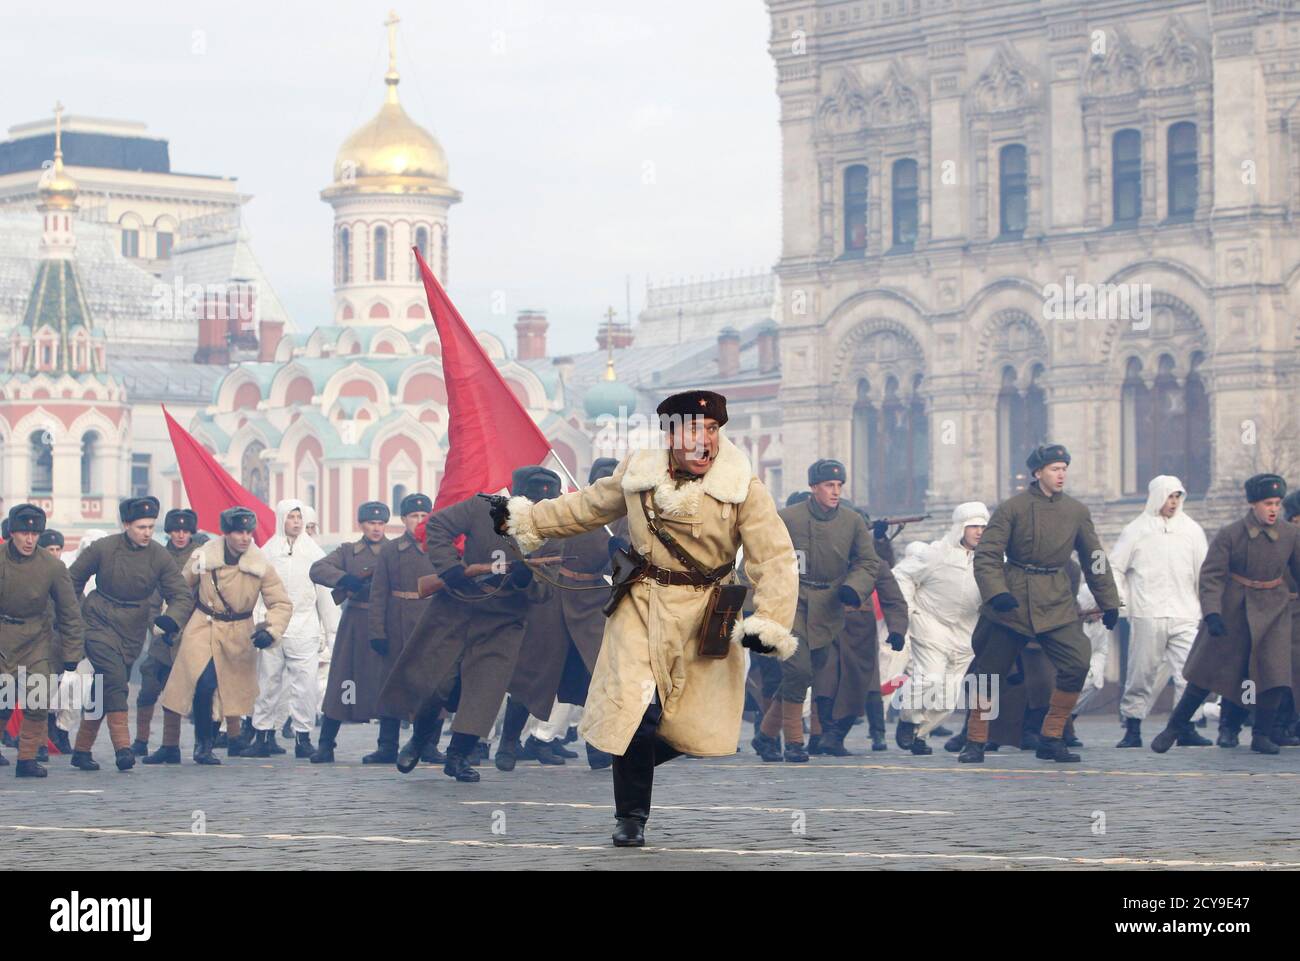 Работа 7 ноября. Парад на красной площади 1941. Парад 7 ноября 1941. Парад на красной площади 7 ноября 1941 года. Фото парада 7 ноября 1941 года на красной площади в Москве.